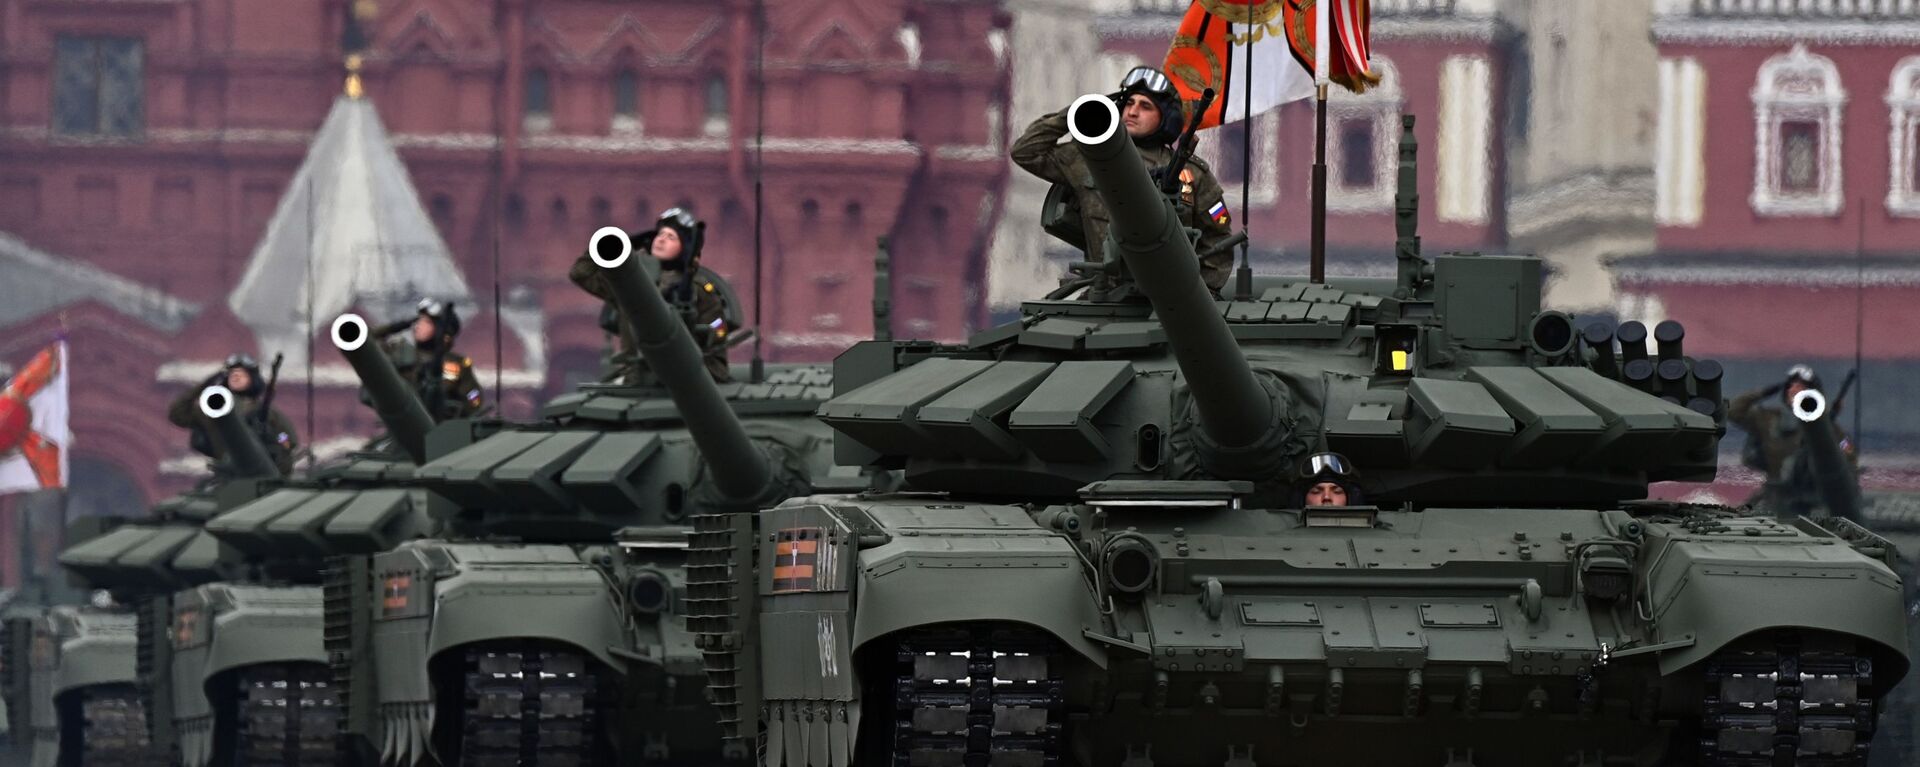 Танк Т-72Б3М во время генеральной репетиции парада в честь 76-й годовщины Победы в Великой Отечественной войне в Москве - Sputnik Latvija, 1920, 16.05.2021